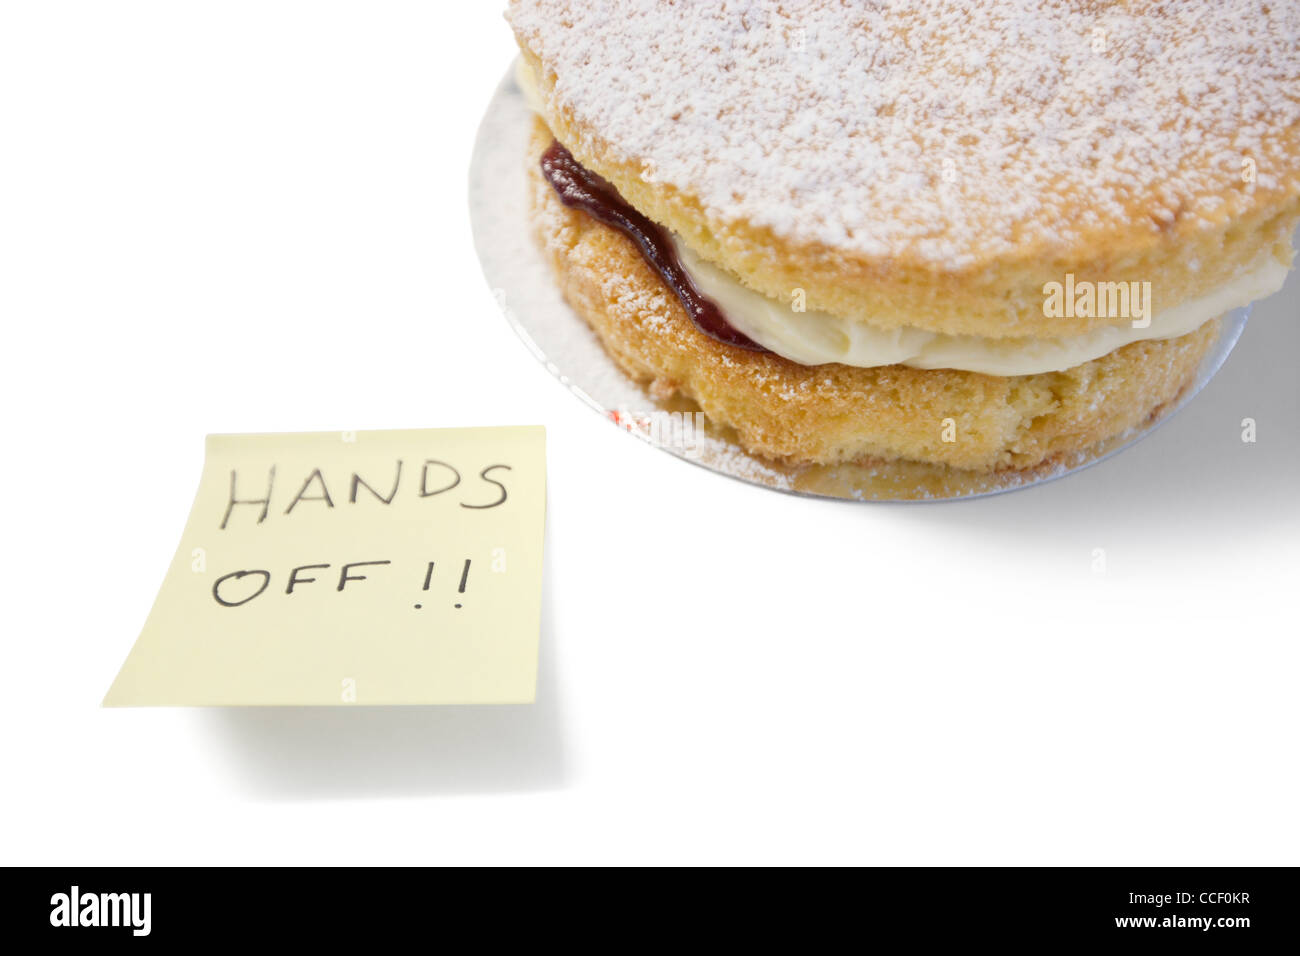 Gâteau éponge avec 'hands off' signe sur papier collant Banque D'Images